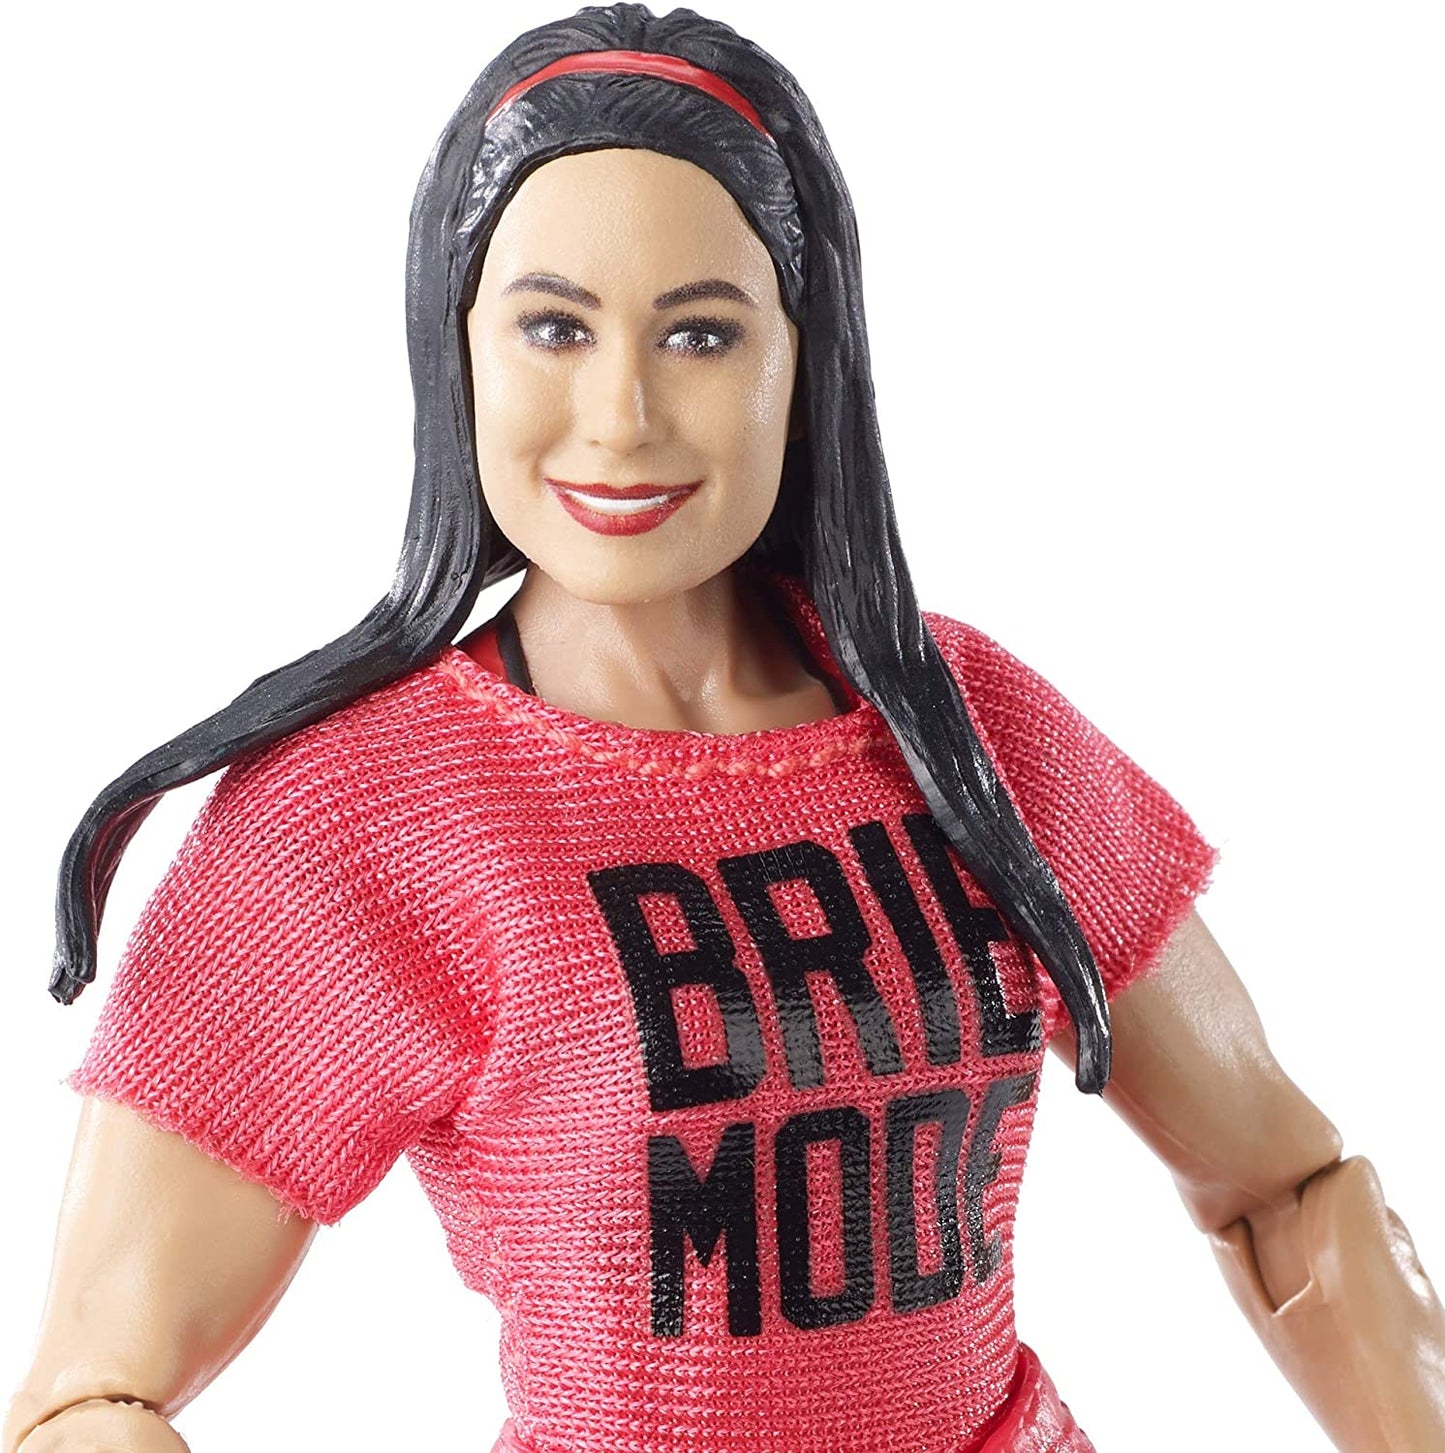 2019 WWE Mattel Elite Collection Series 68 Brie Bella